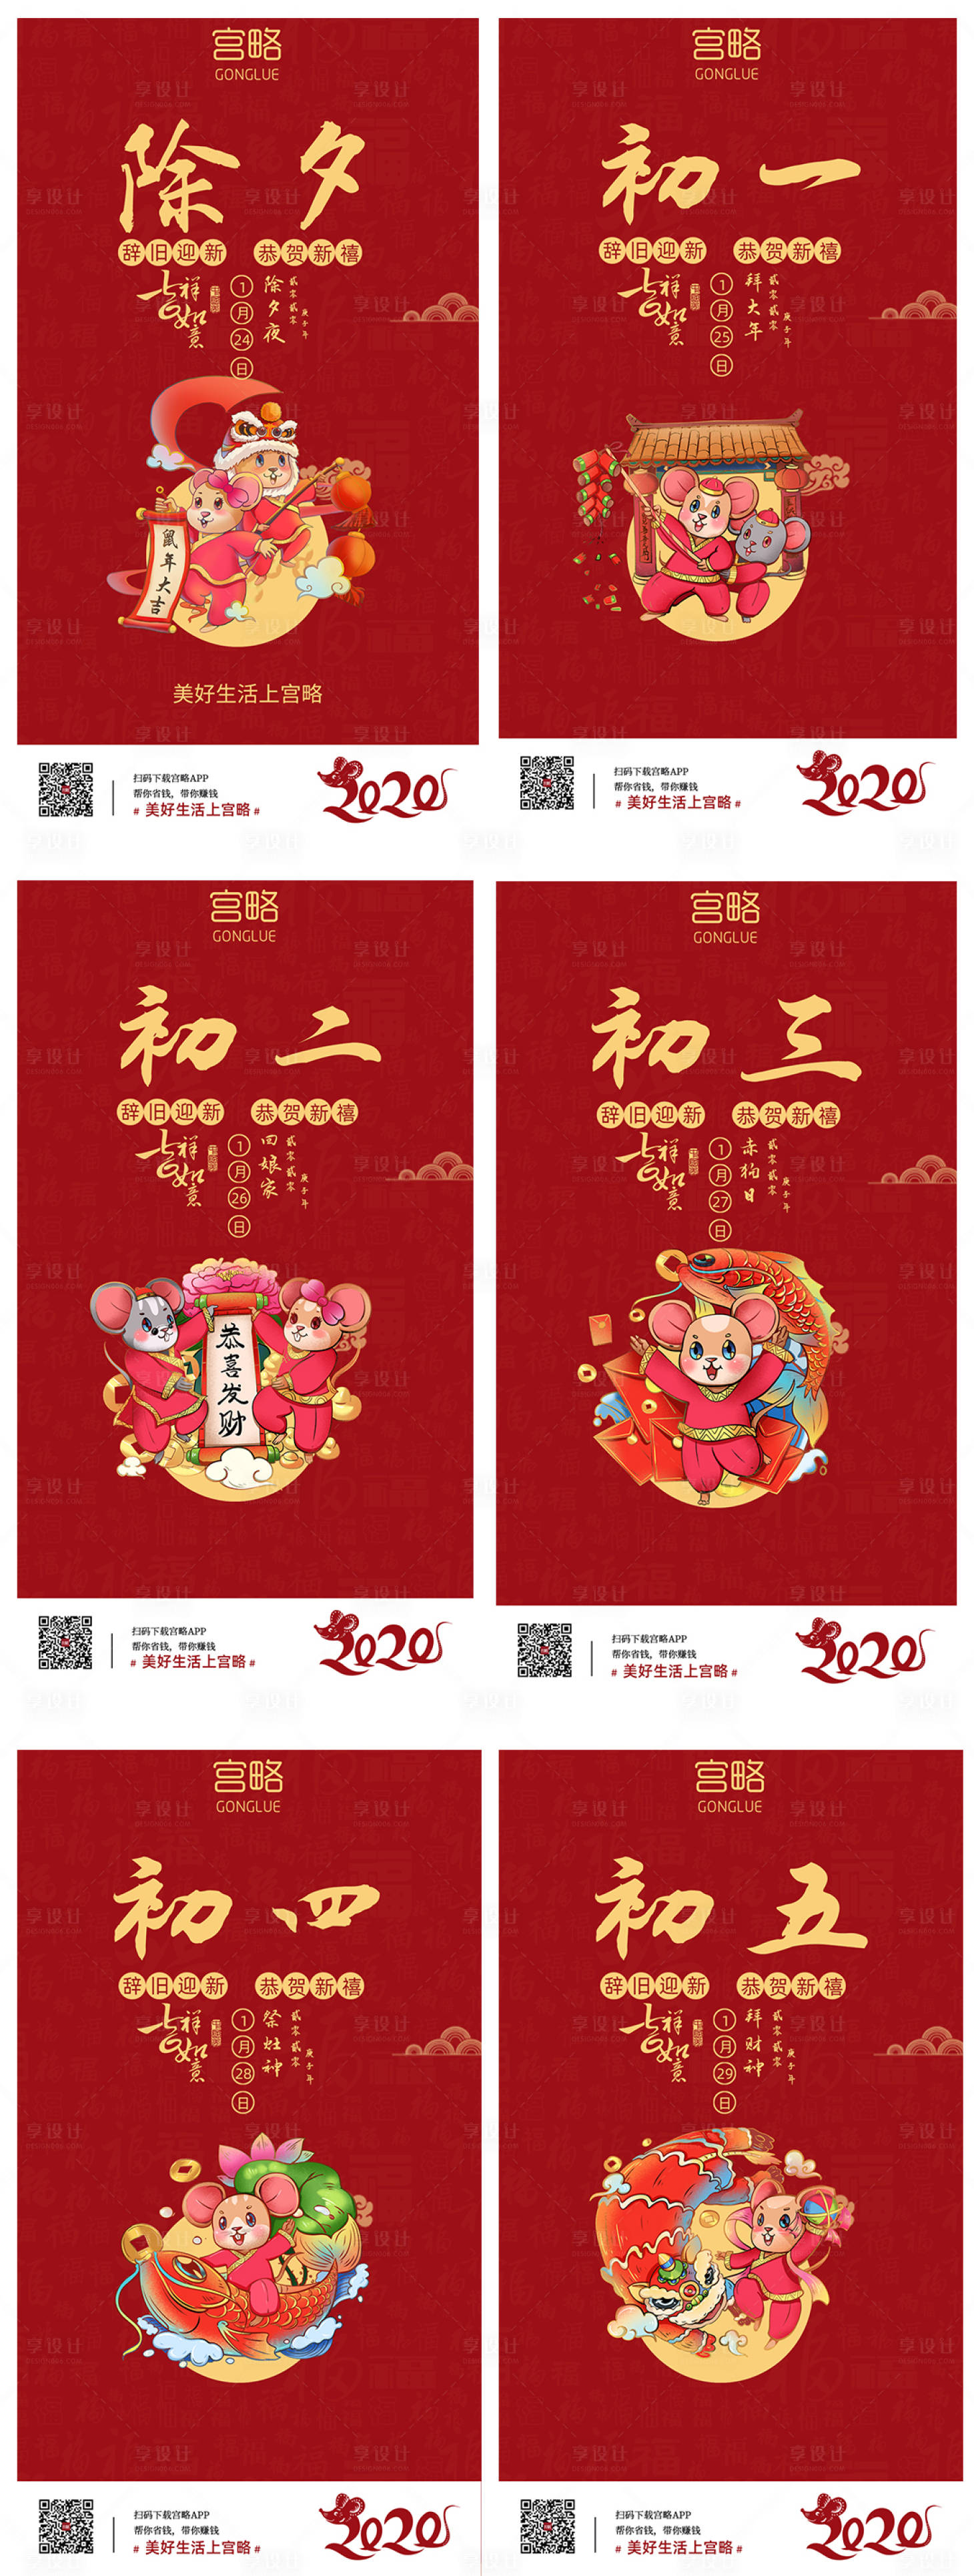 春节年俗初一至初七移动端海报系列